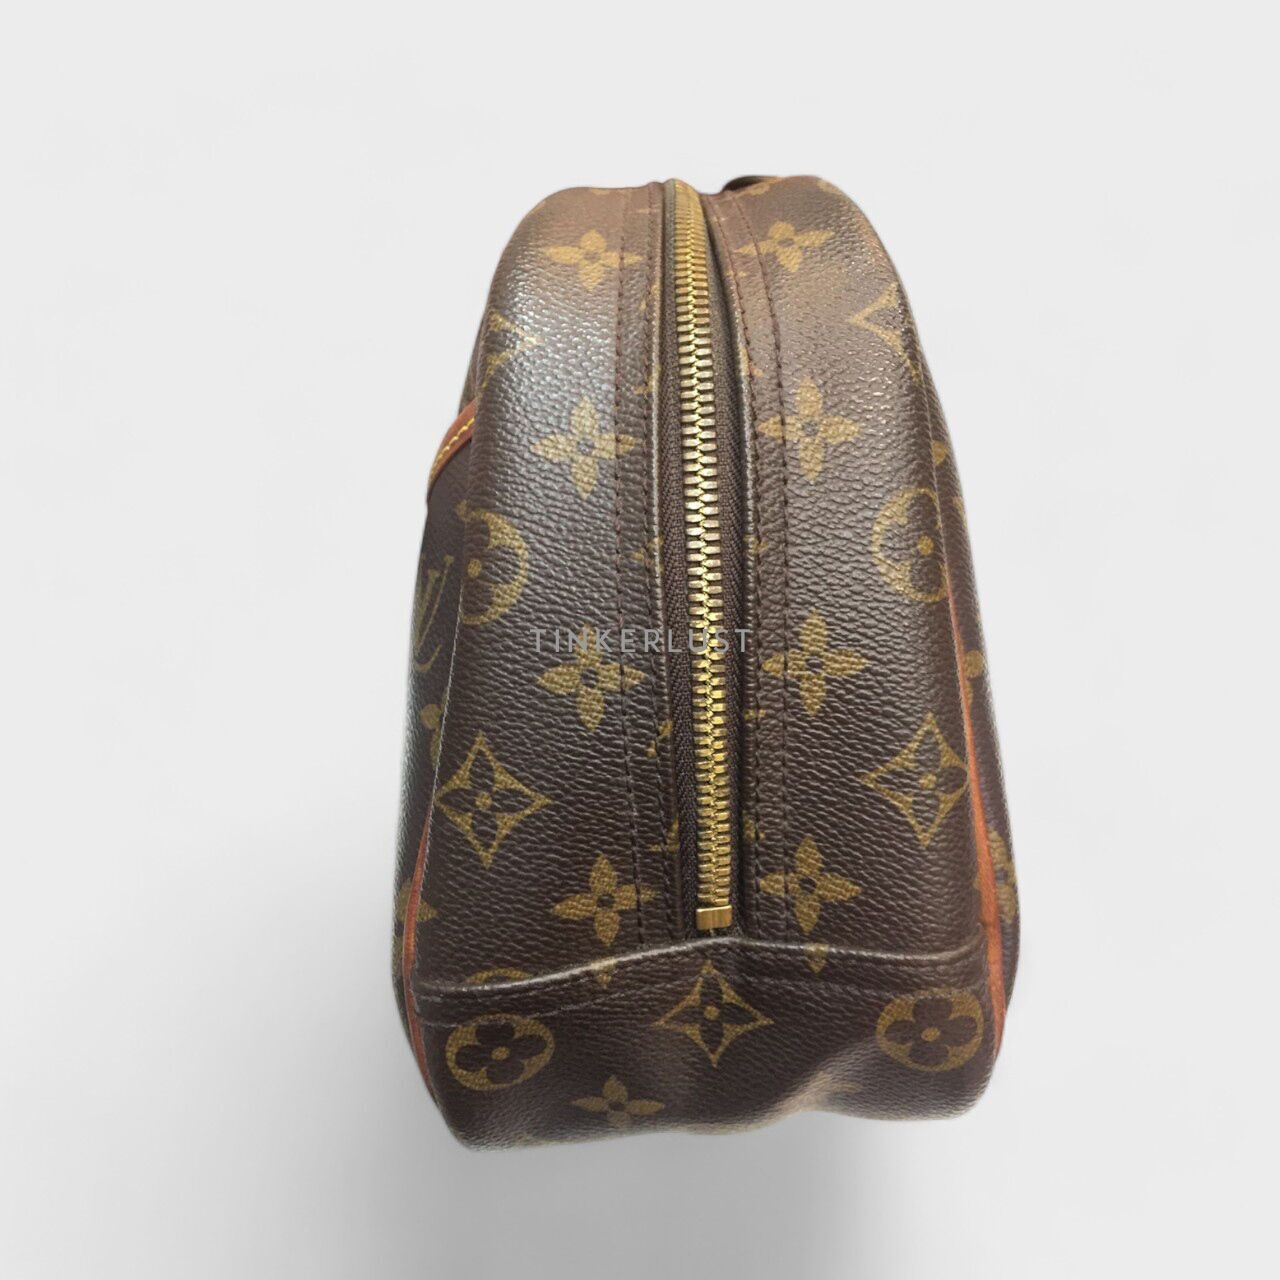 Louis Vuitton Trouville PM Monogram 2004 Handbag